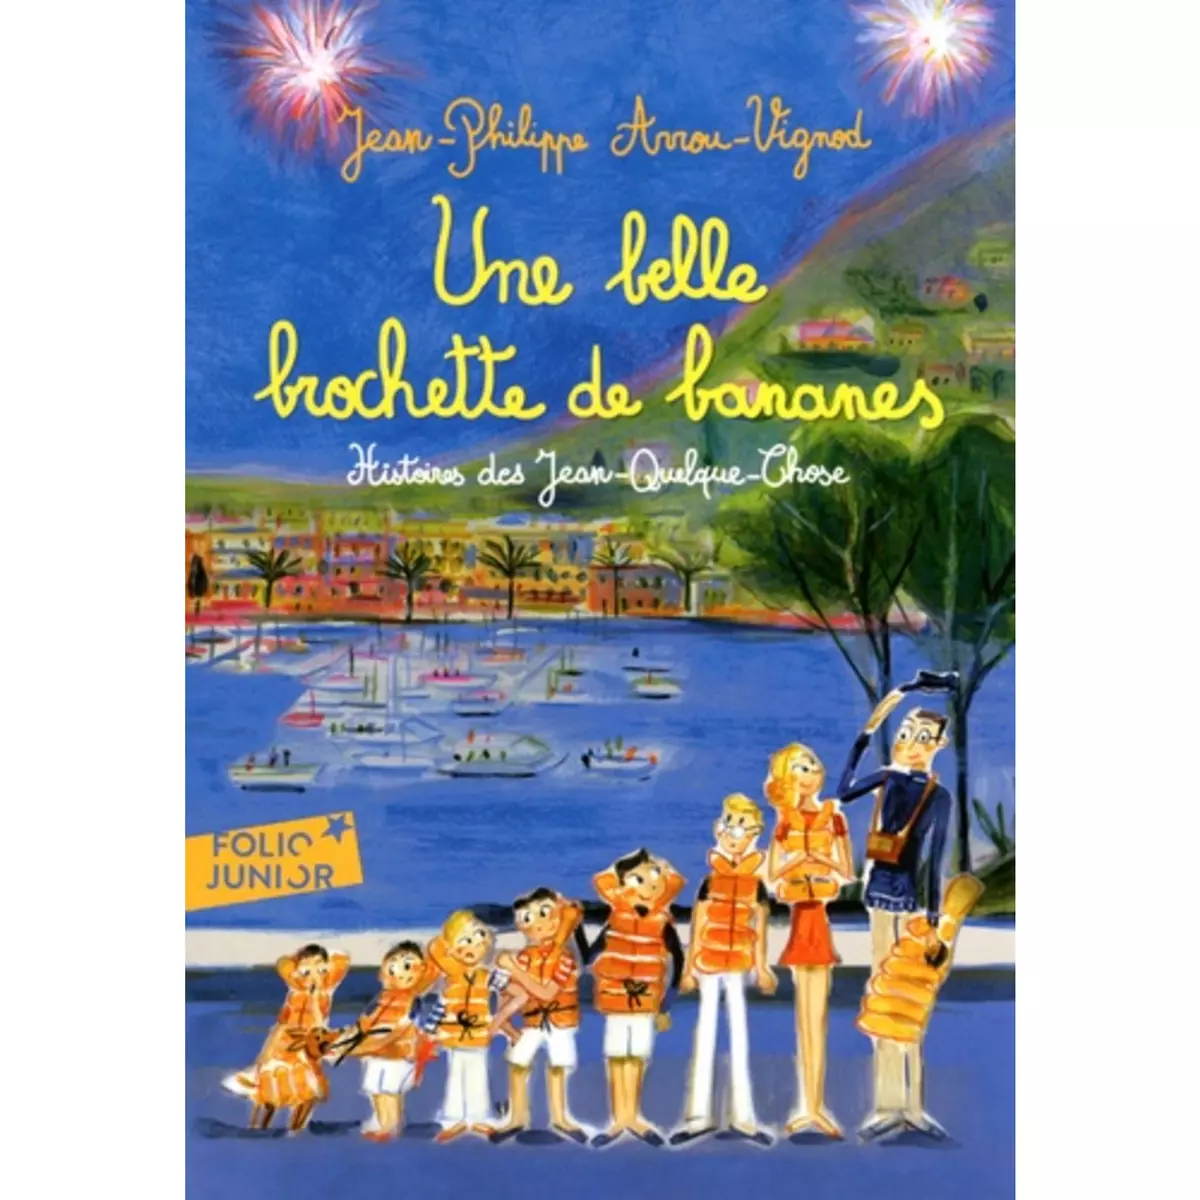  HISTOIRES DES JEAN-QUELQUE-CHOSE : UNE BELLE BROCHETTE DE BANANES, Arrou-Vignod Jean-Philippe